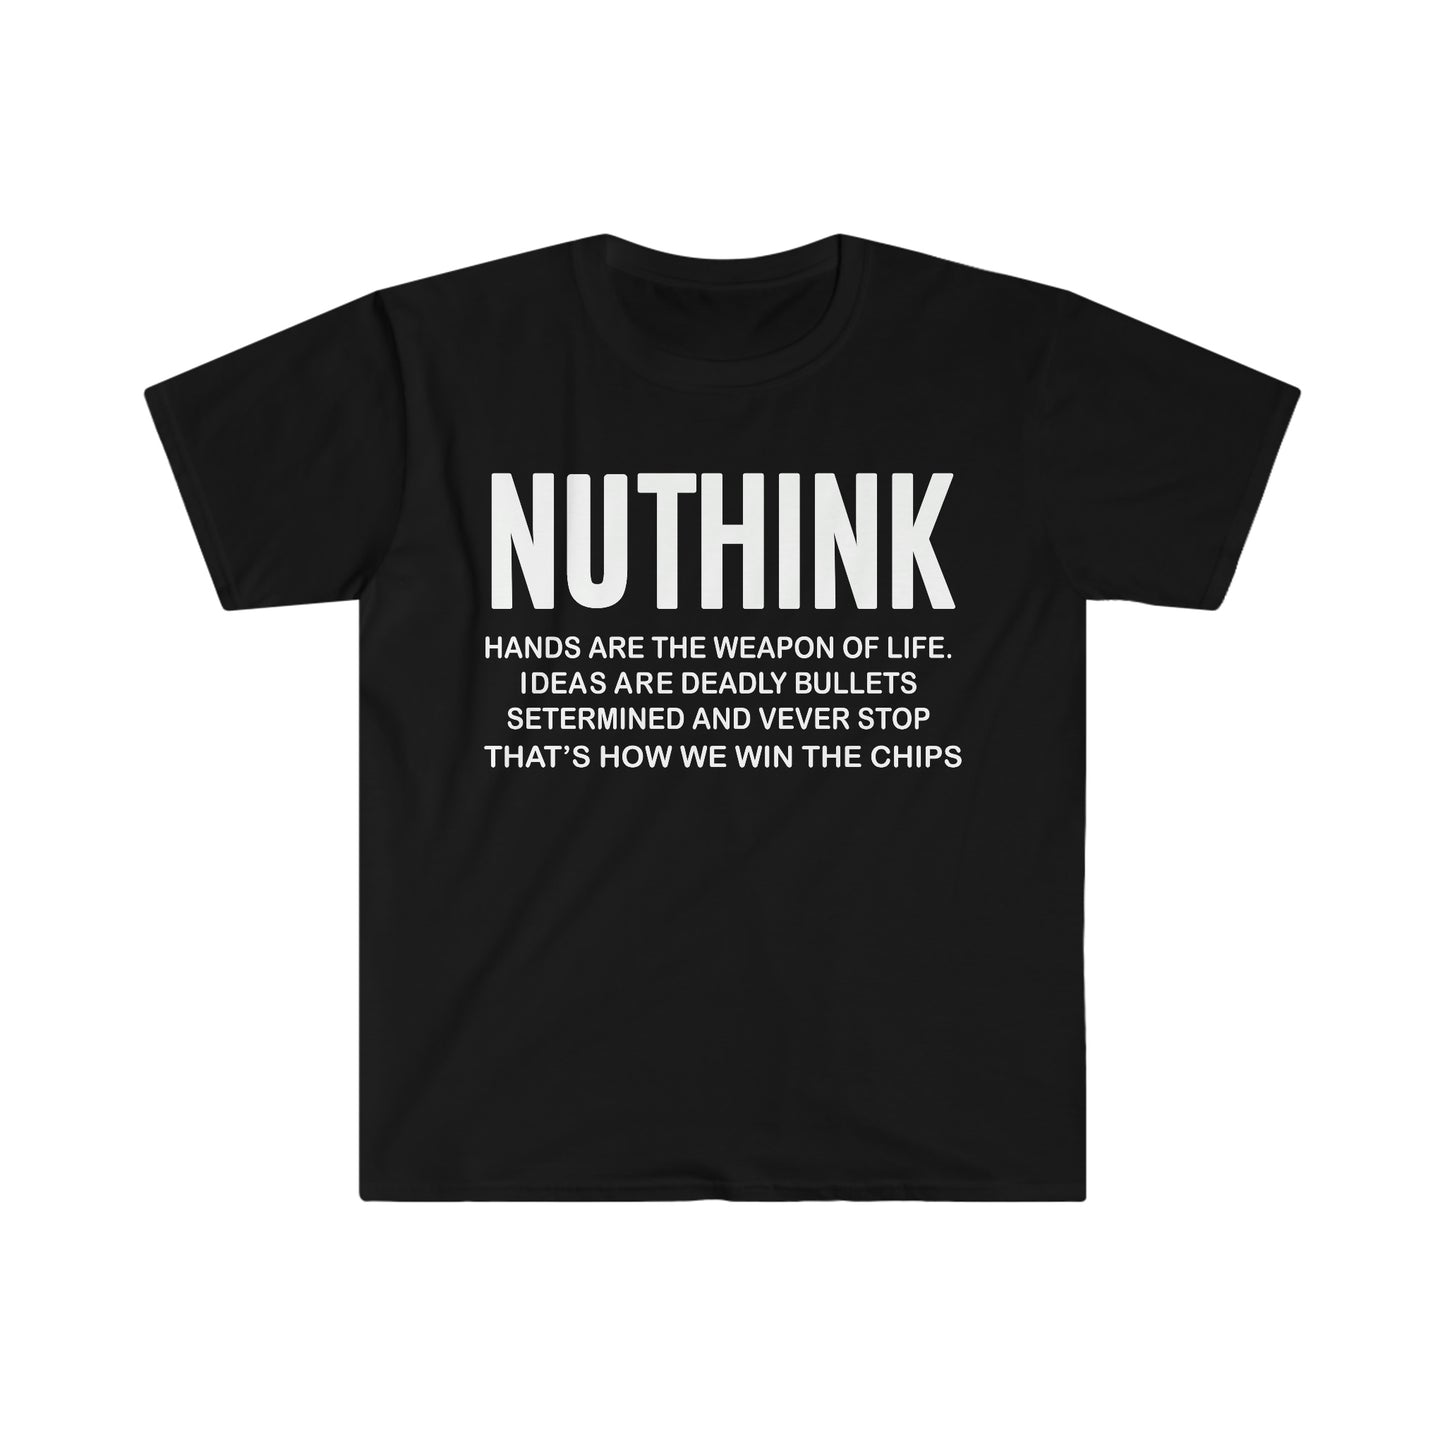 Nuthink.